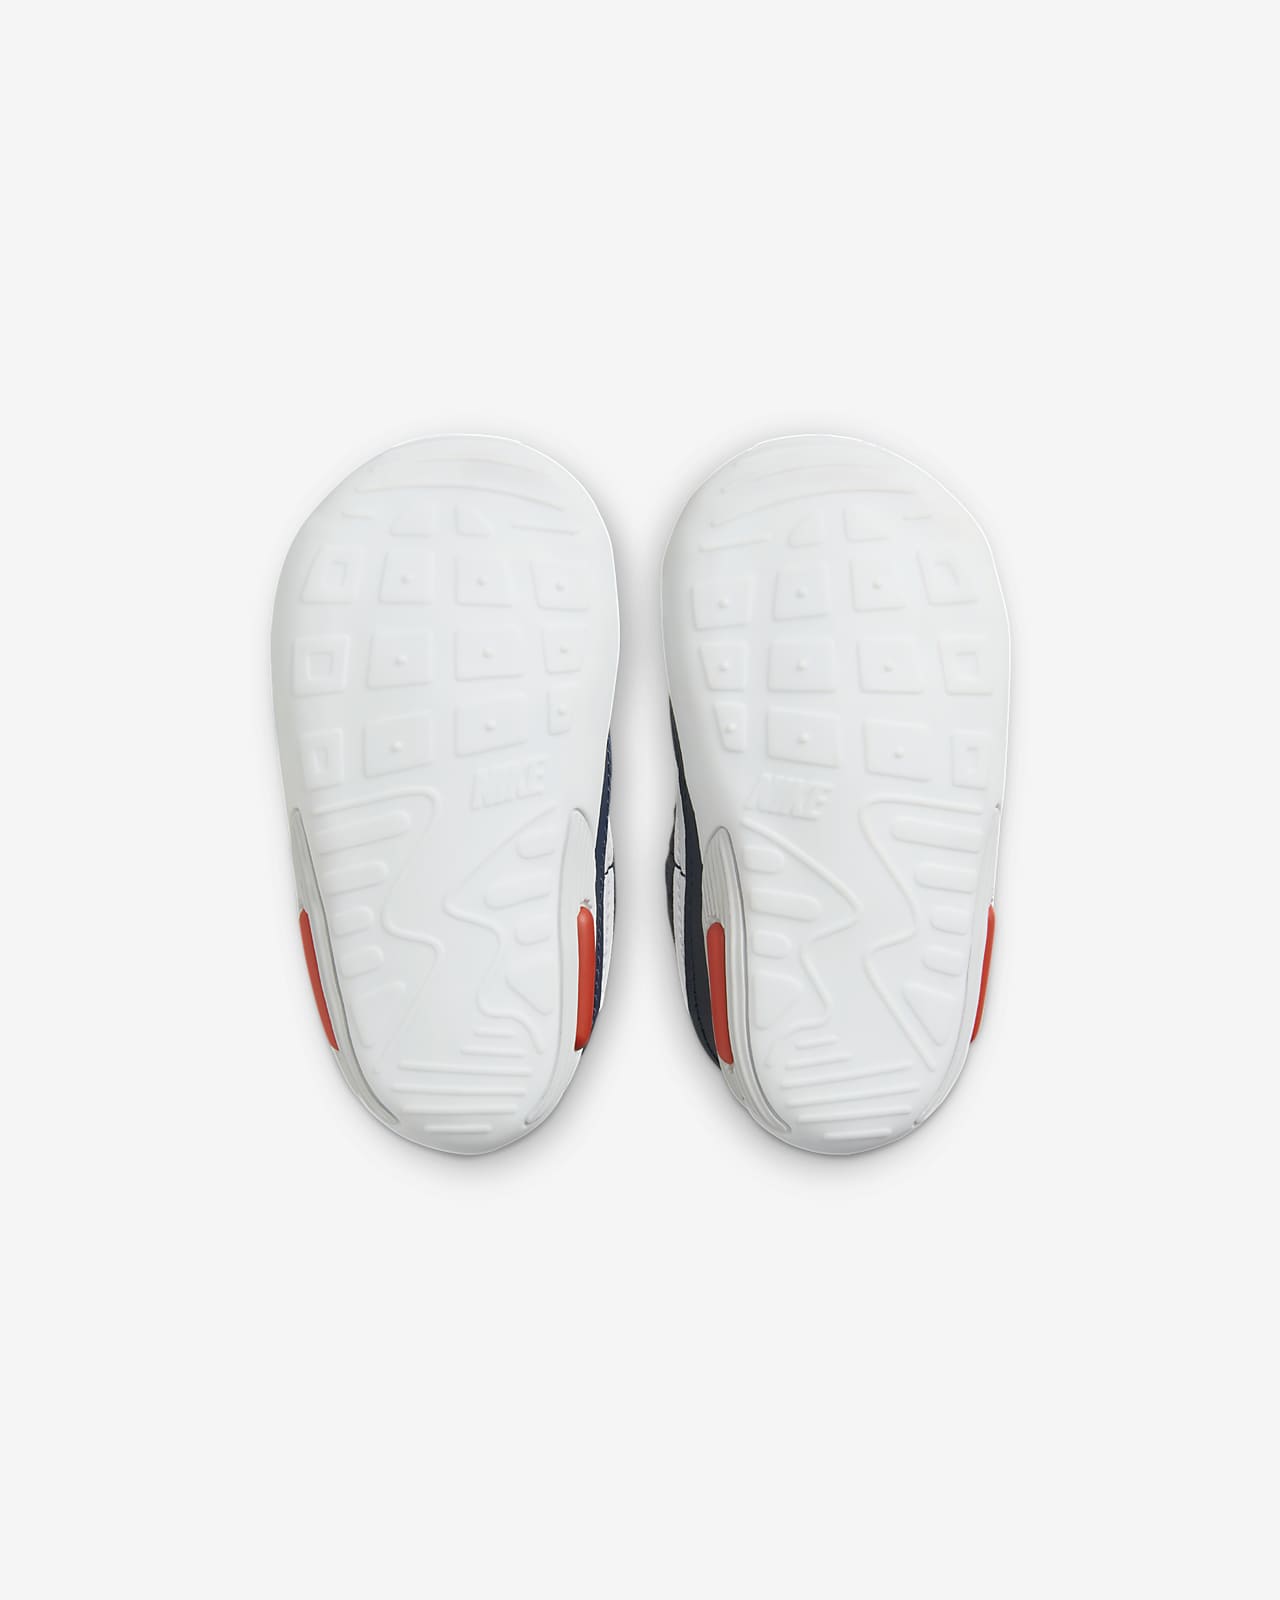 Les Meilleurs Chaussons Nike de tous les temps ! 💖 (livraison